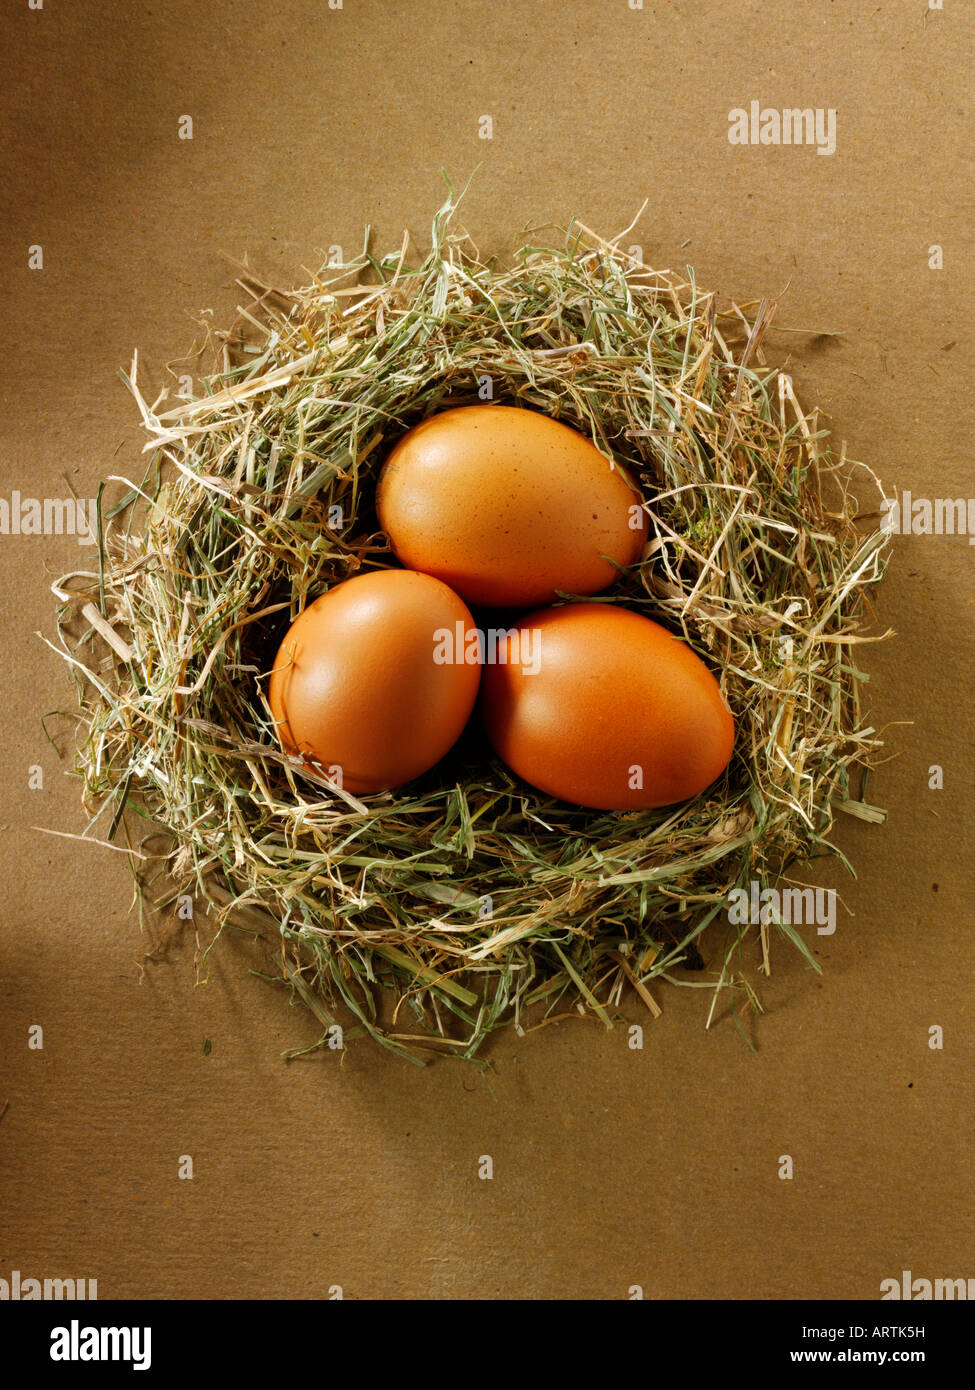 Burford café orgánico en un nido de huevos de pollo Foto de stock